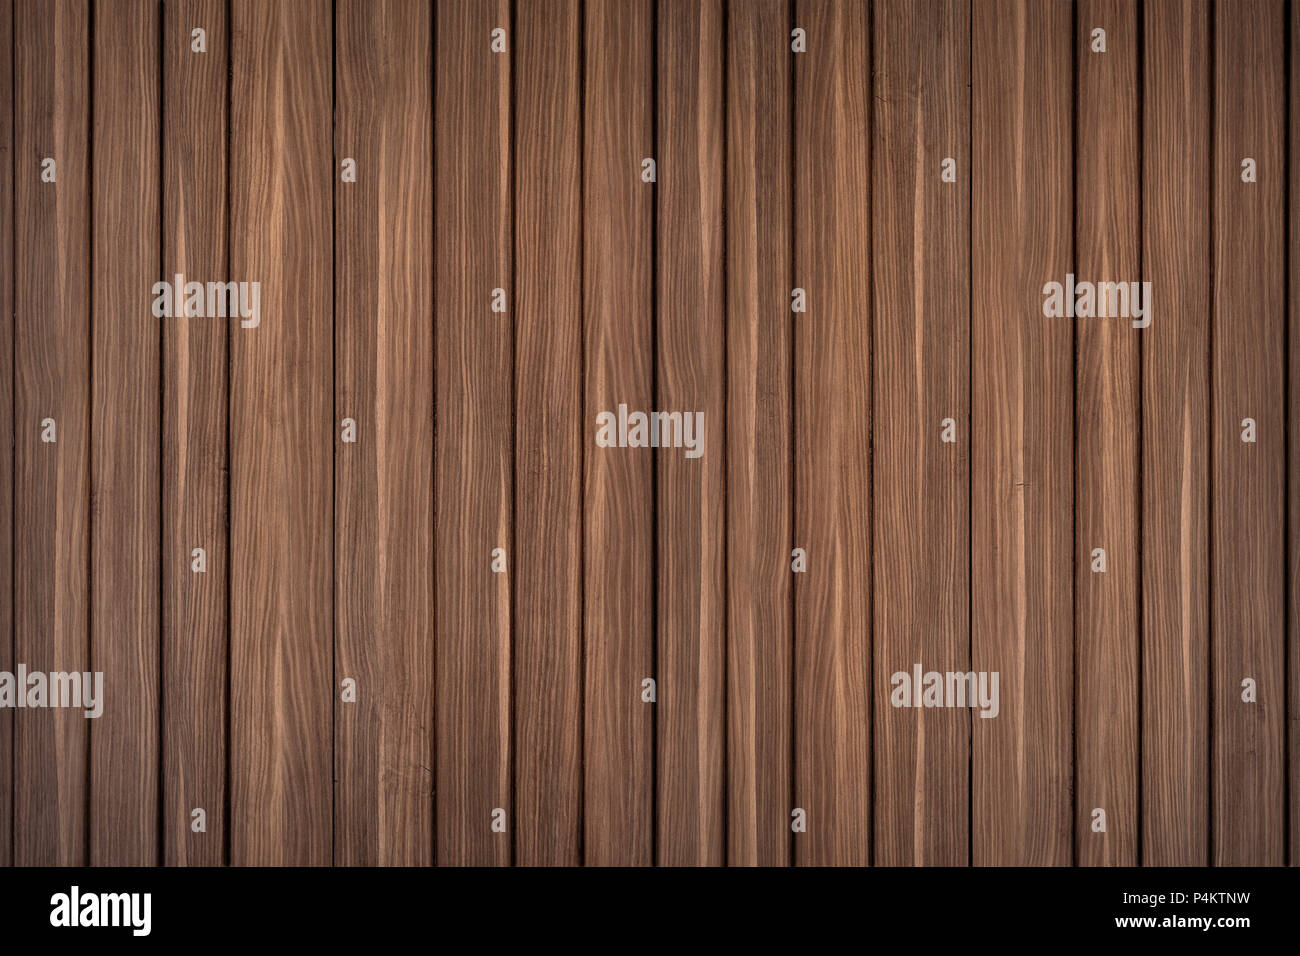 grunge wood panels Stock Photo